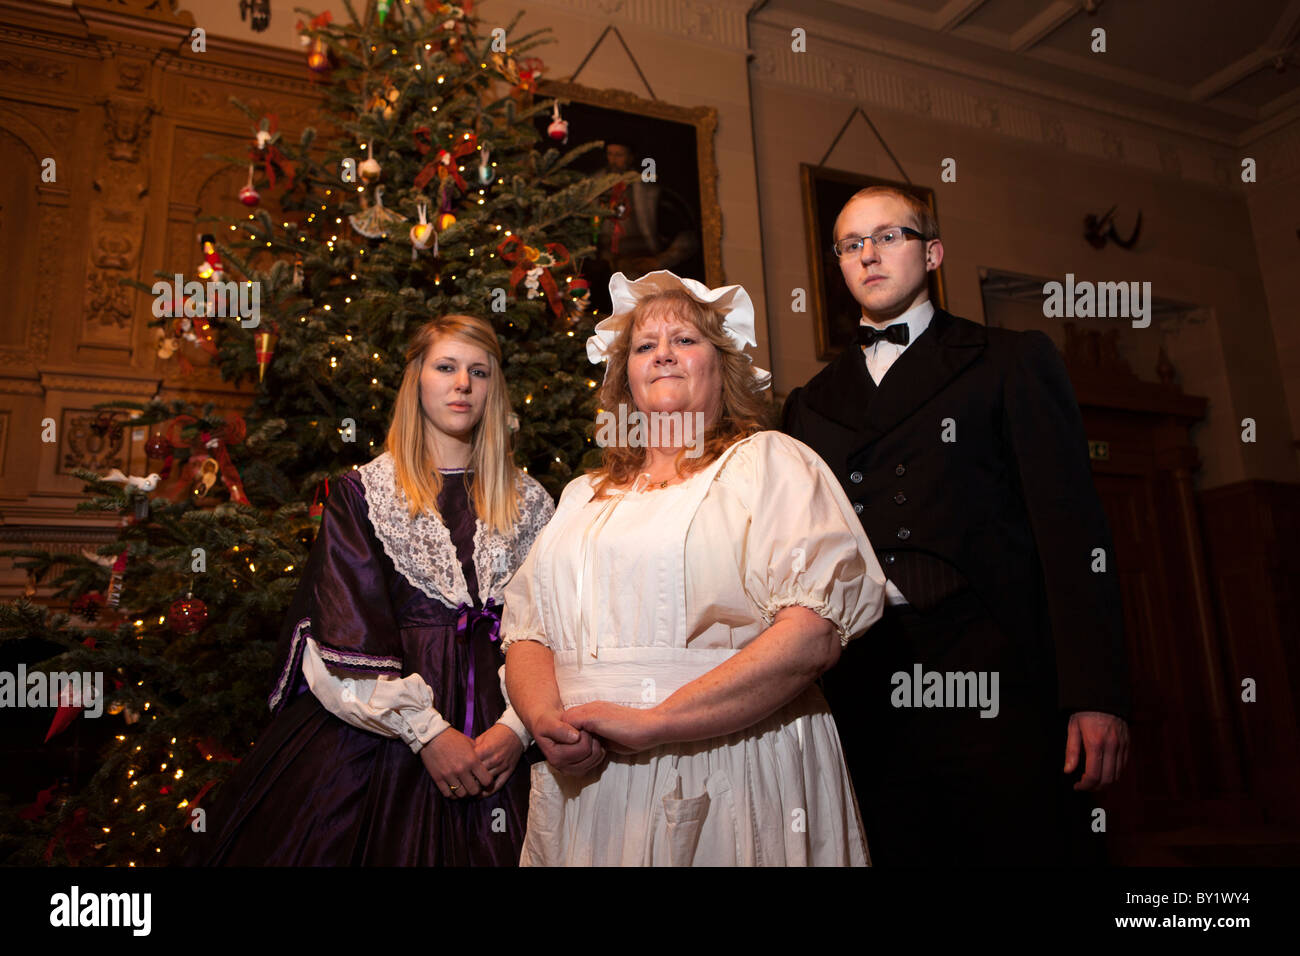 Regno Unito, Inghilterra, Yorkshire, Leeds, Temple Newsam House vittoriana di evento di Natale, costume personale Foto Stock